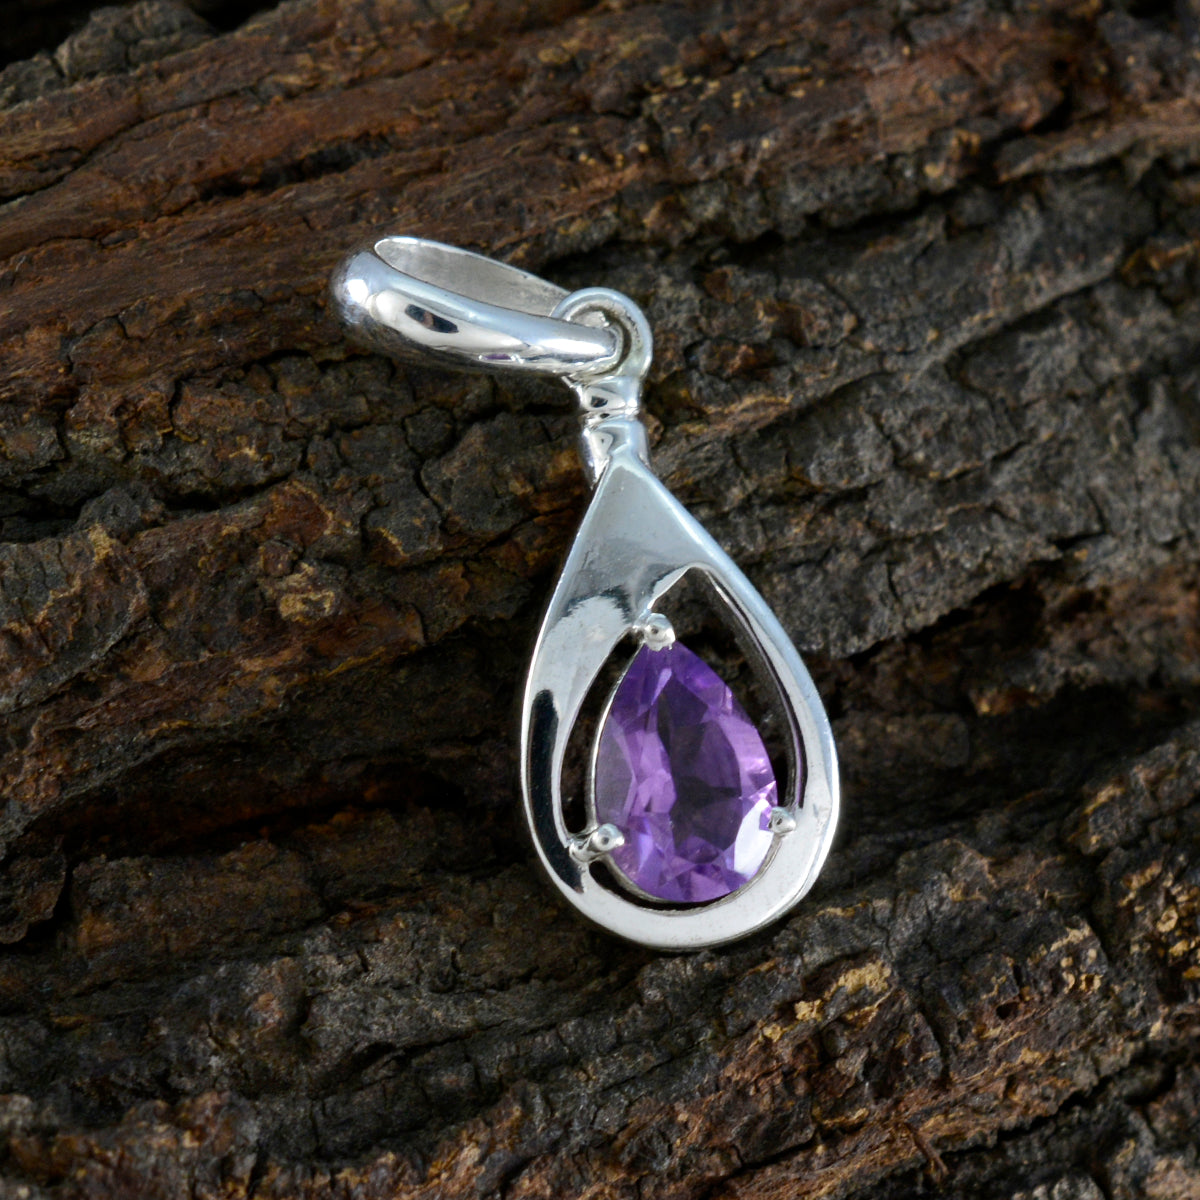 Riyo magnifiques pierres précieuses poire à facettes améthyste violette pendentif en argent massif cadeau pour mariage